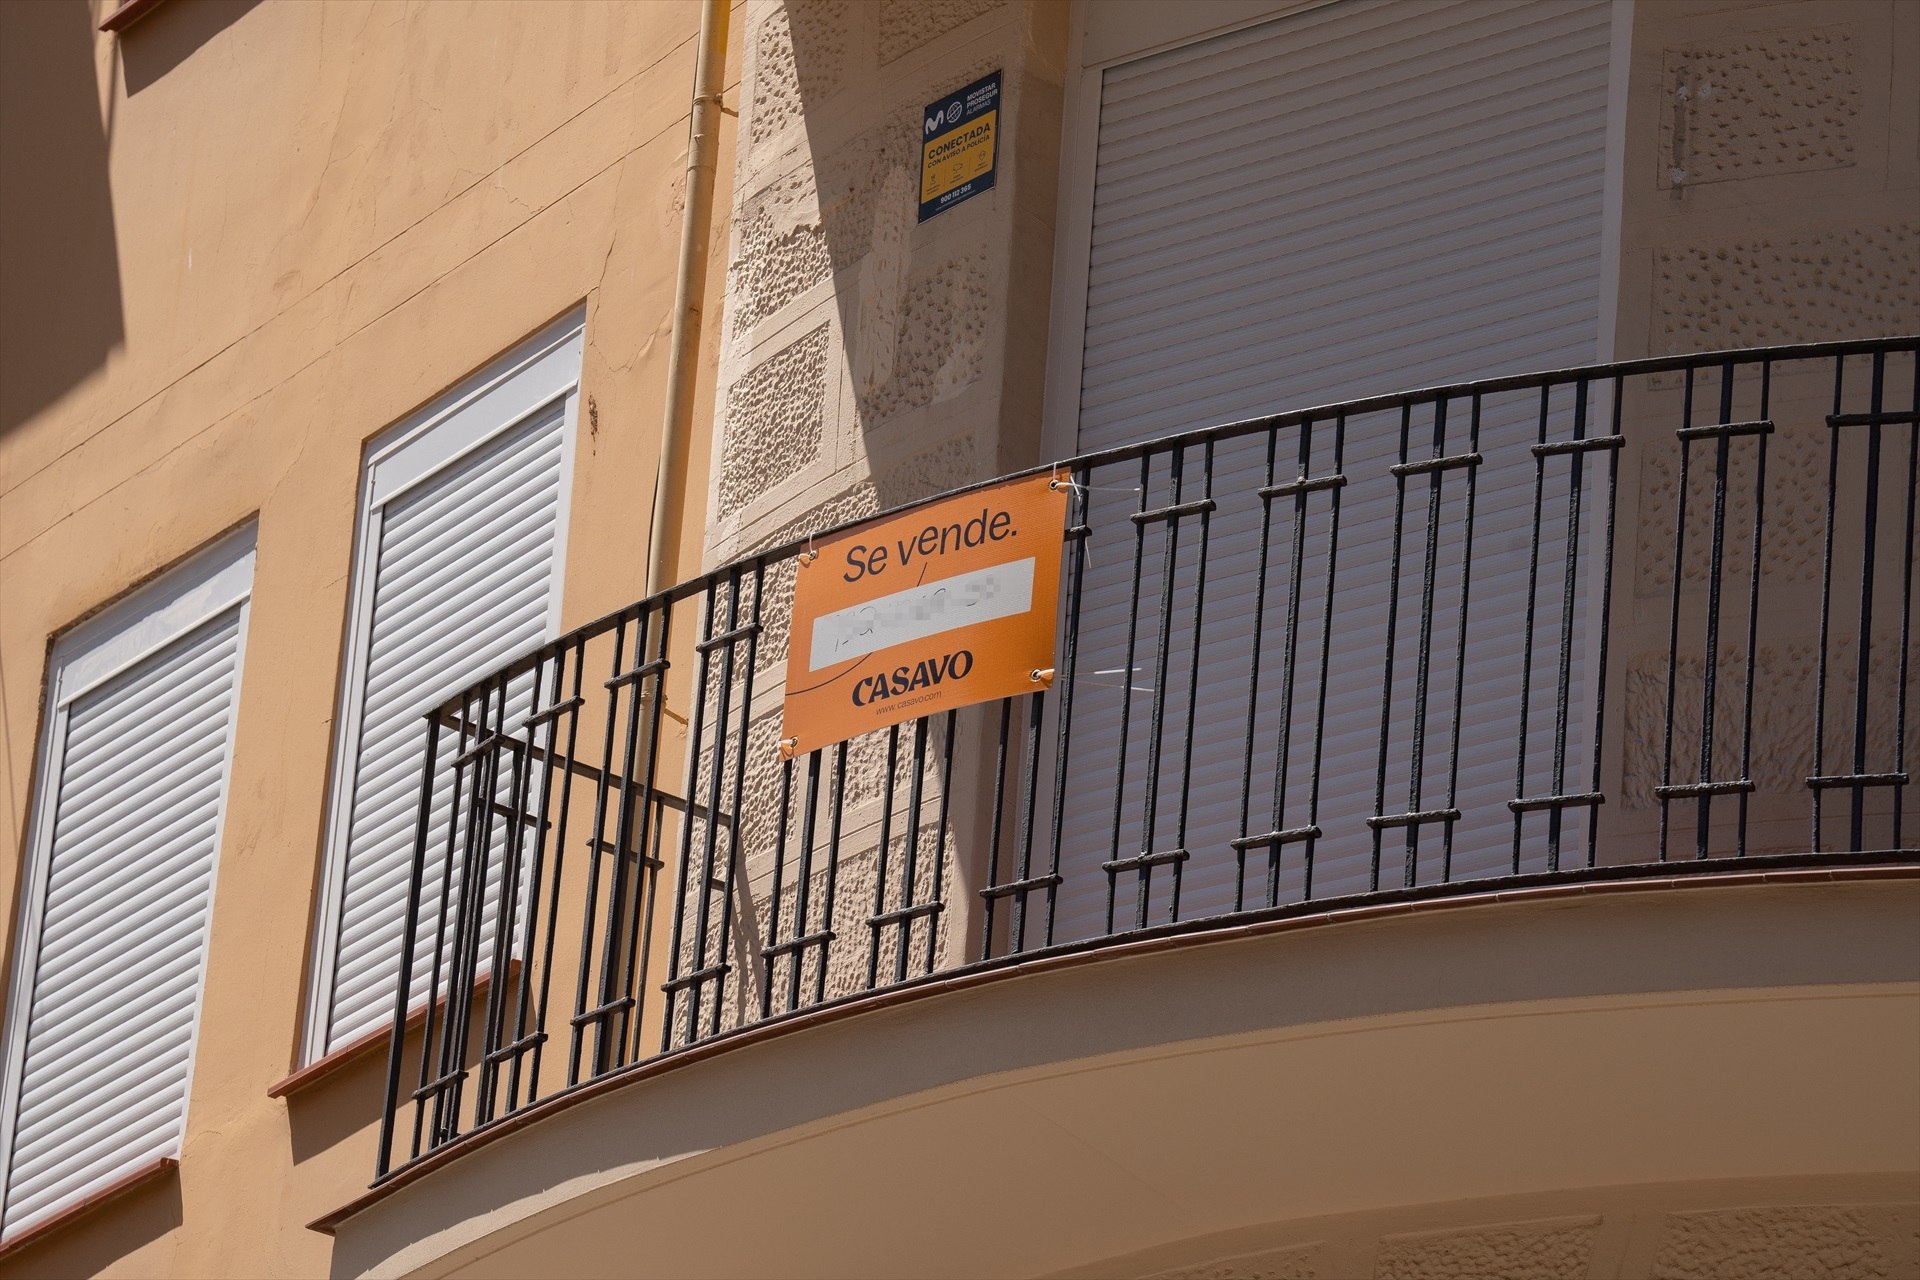 EuropaPress 5205424 cartel vende balcon vivienda 17 mayo 2023 barcelona cataluna espana despues